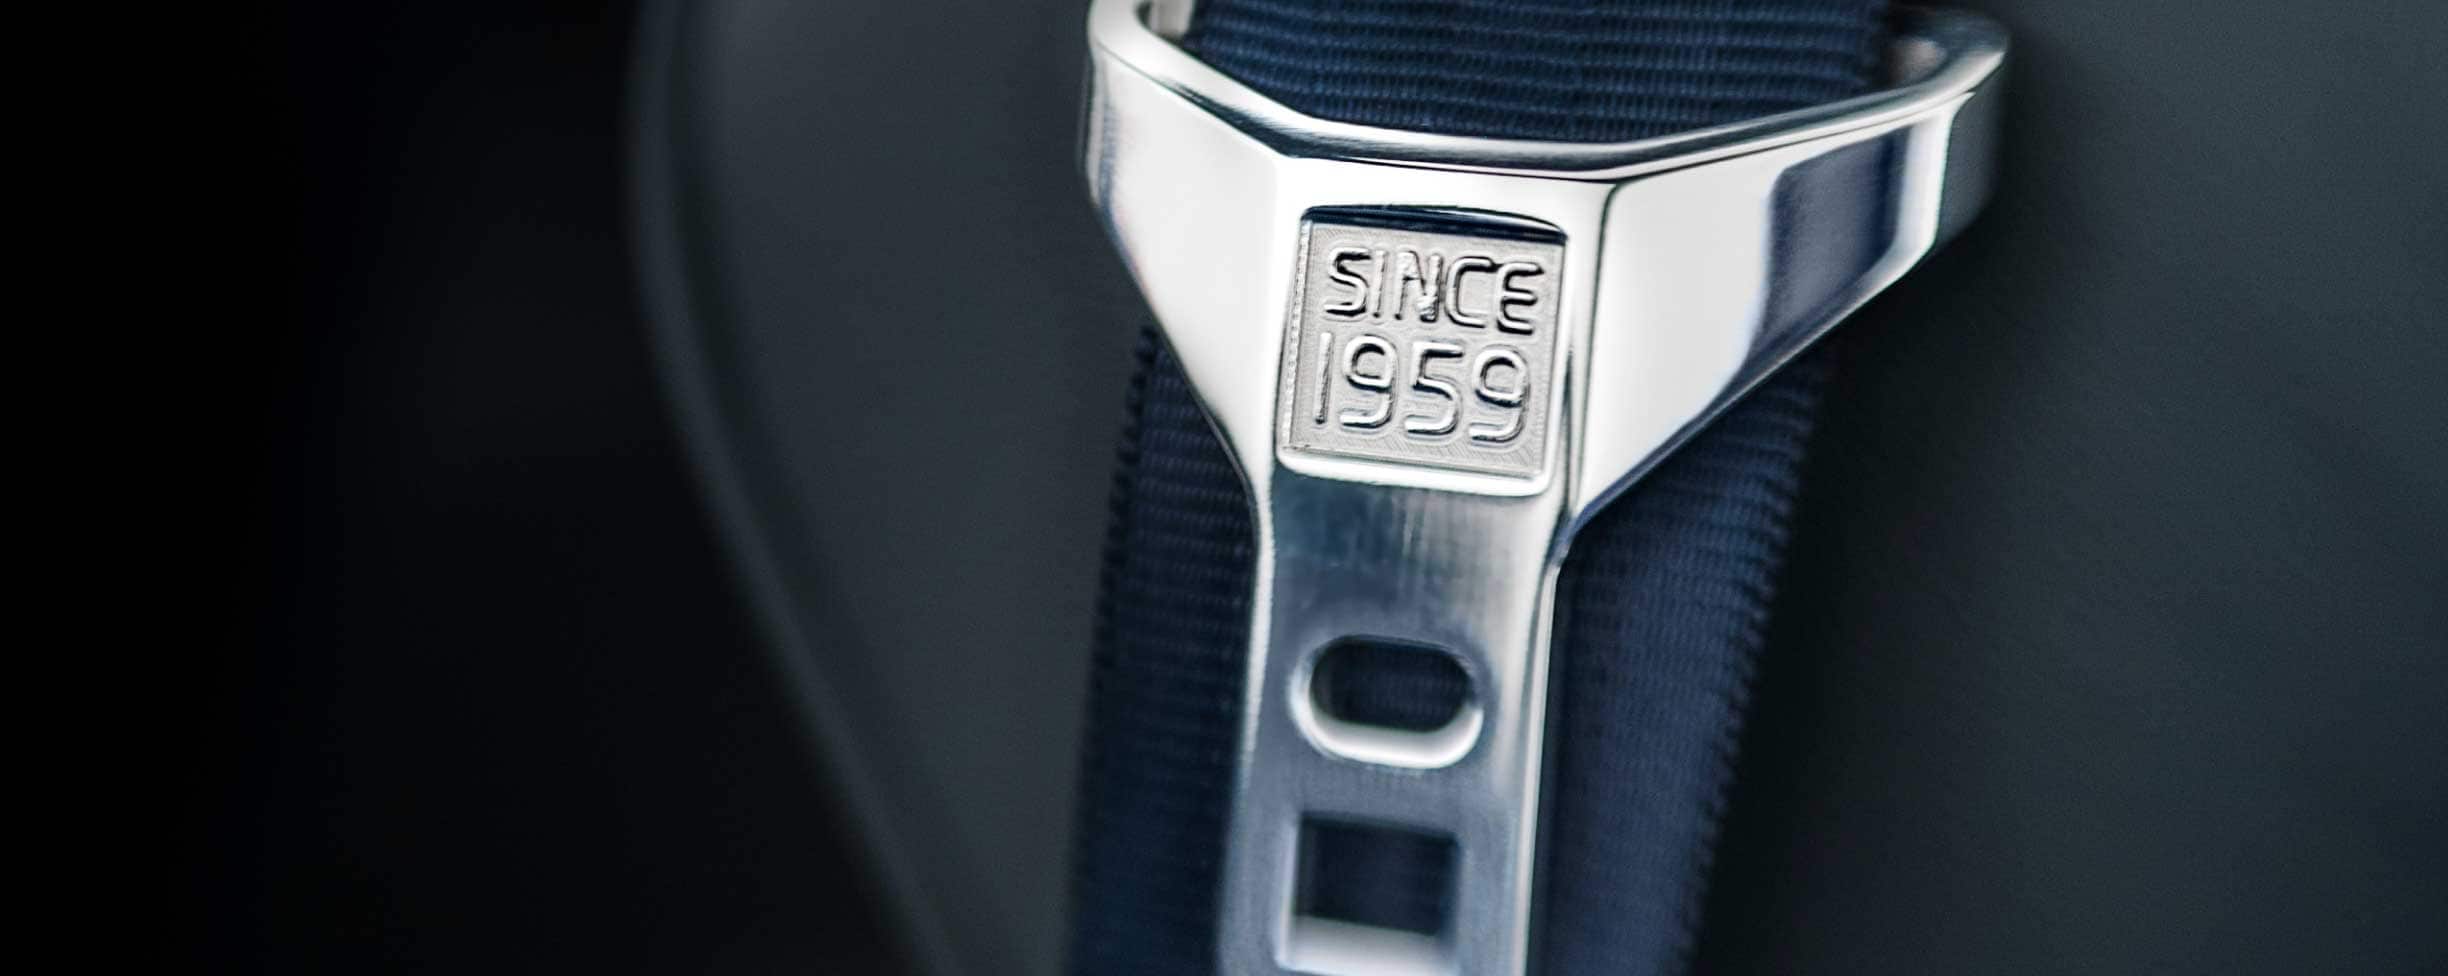 Et grått sikkerhetsbelte med inskripsjonen «Since 1959» på beltespennen